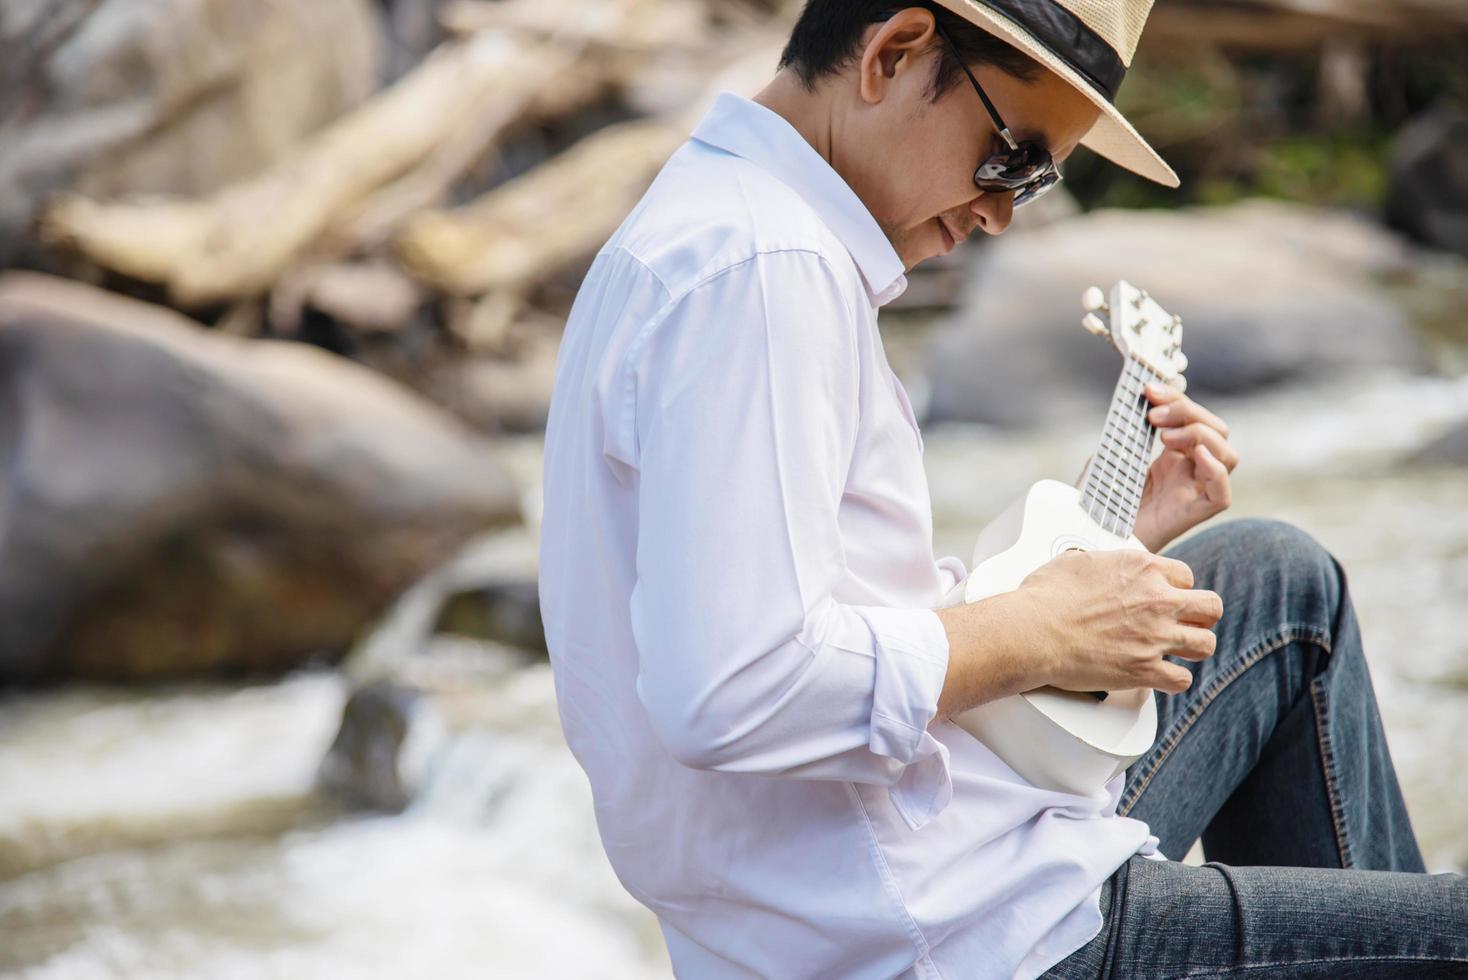 homem toca ukulele novo no estilo de vida de pessoas do rio e instrumentos musicais no conceito de natureza foto